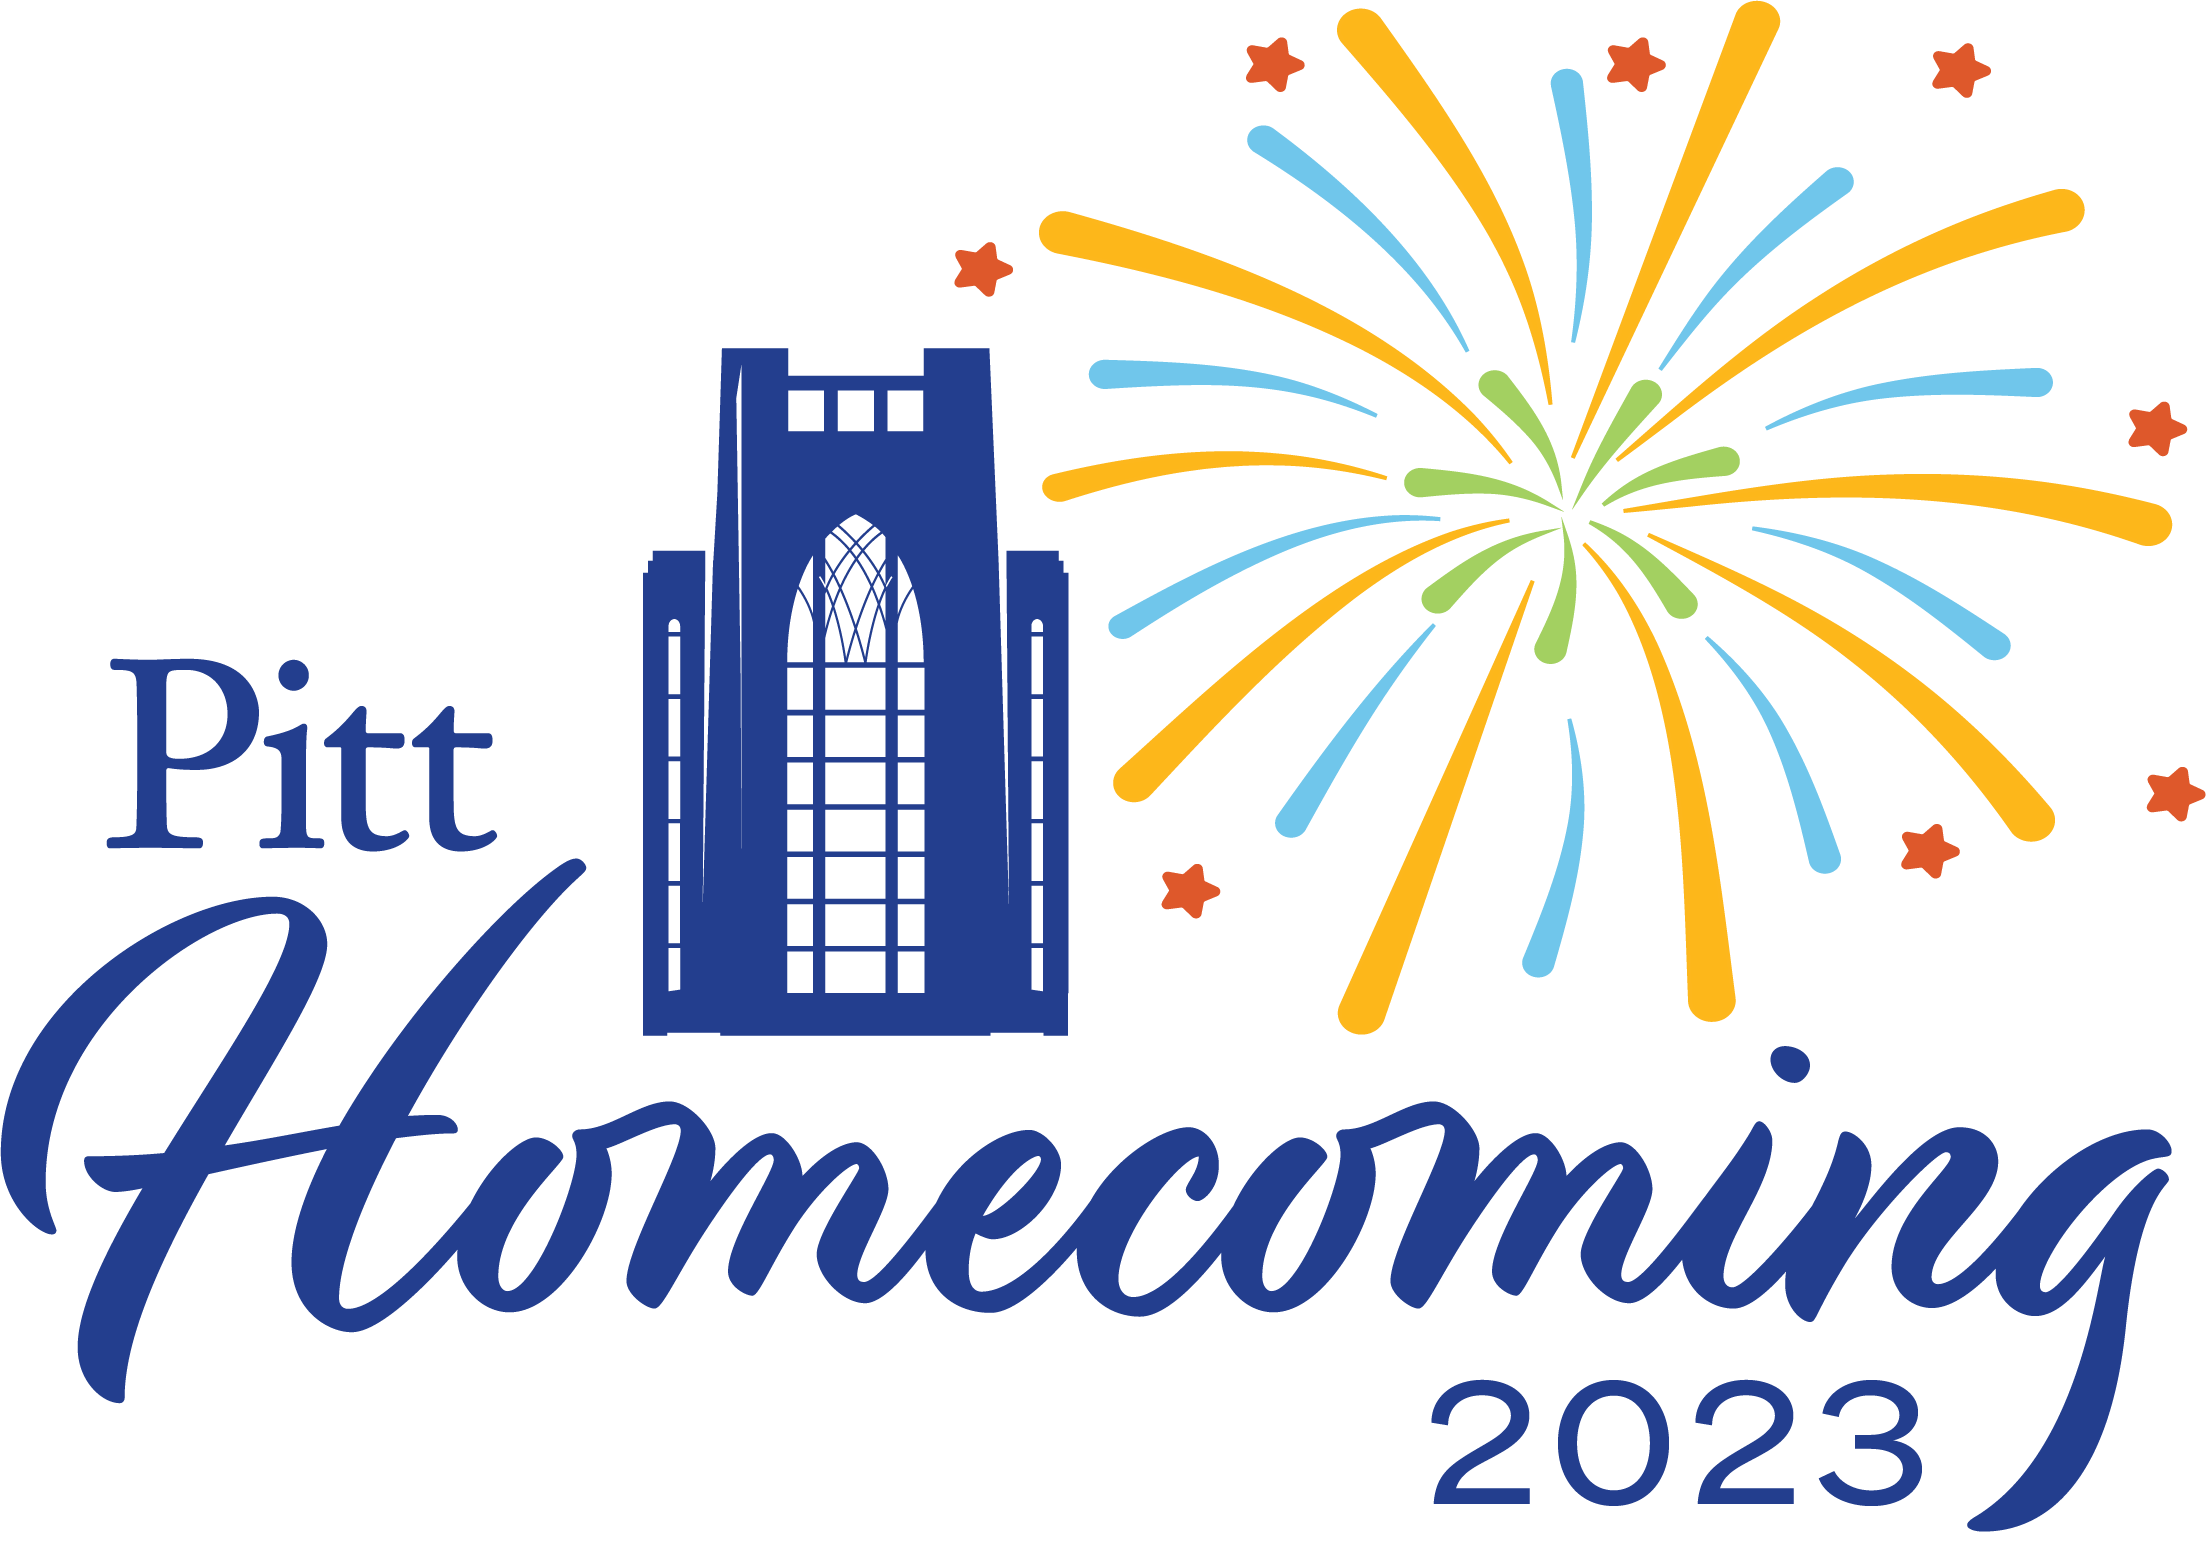 Pitt Homecoming 2023 logo